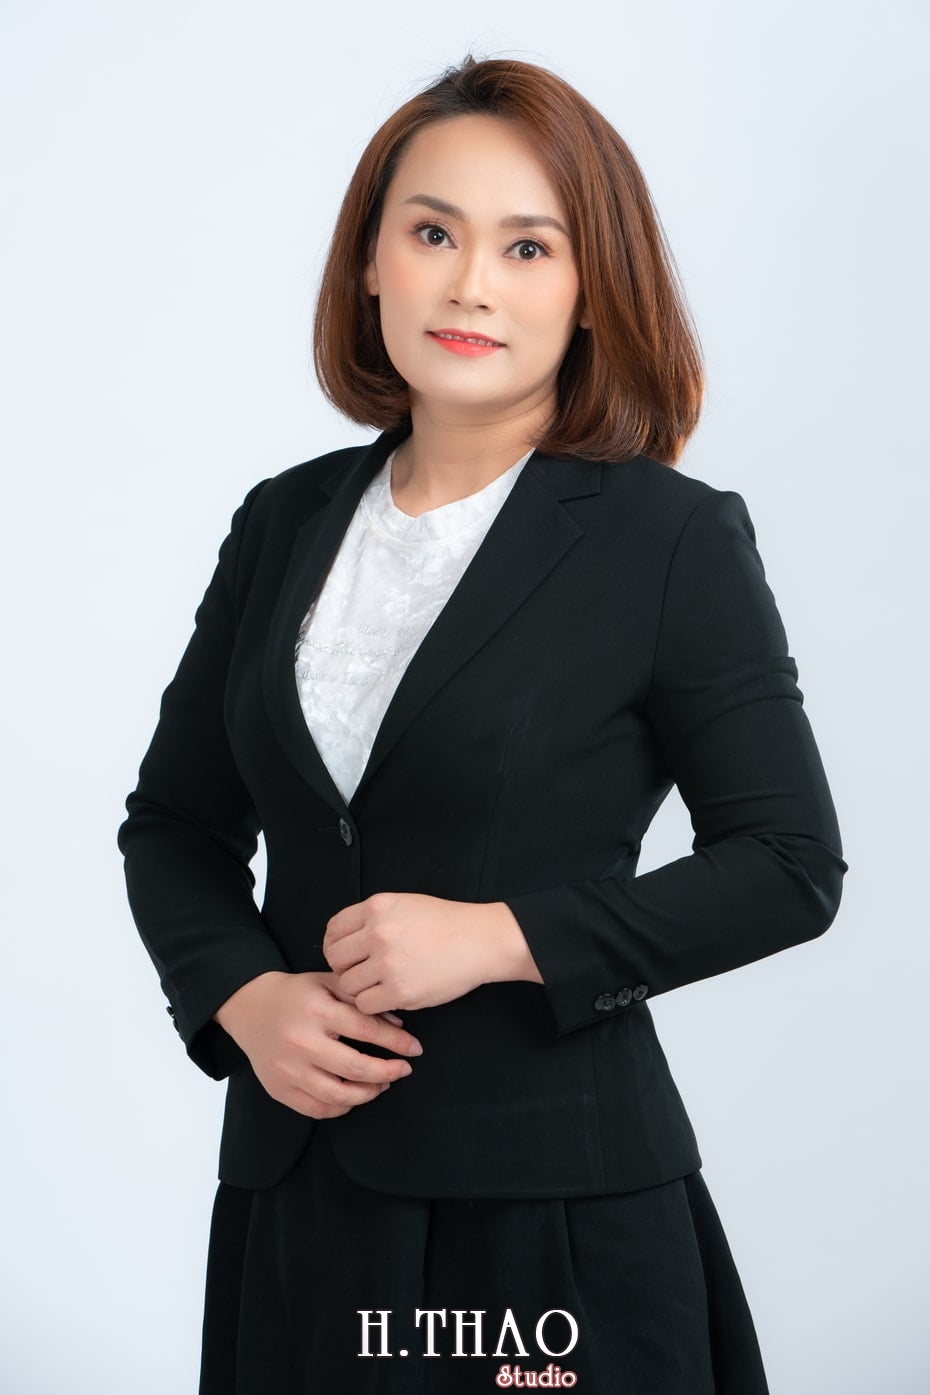 Anh Profile 3 - Album ảnh doanh nhân nữ: chị Kim đẹp nhẹ nhàng - HThao Studio